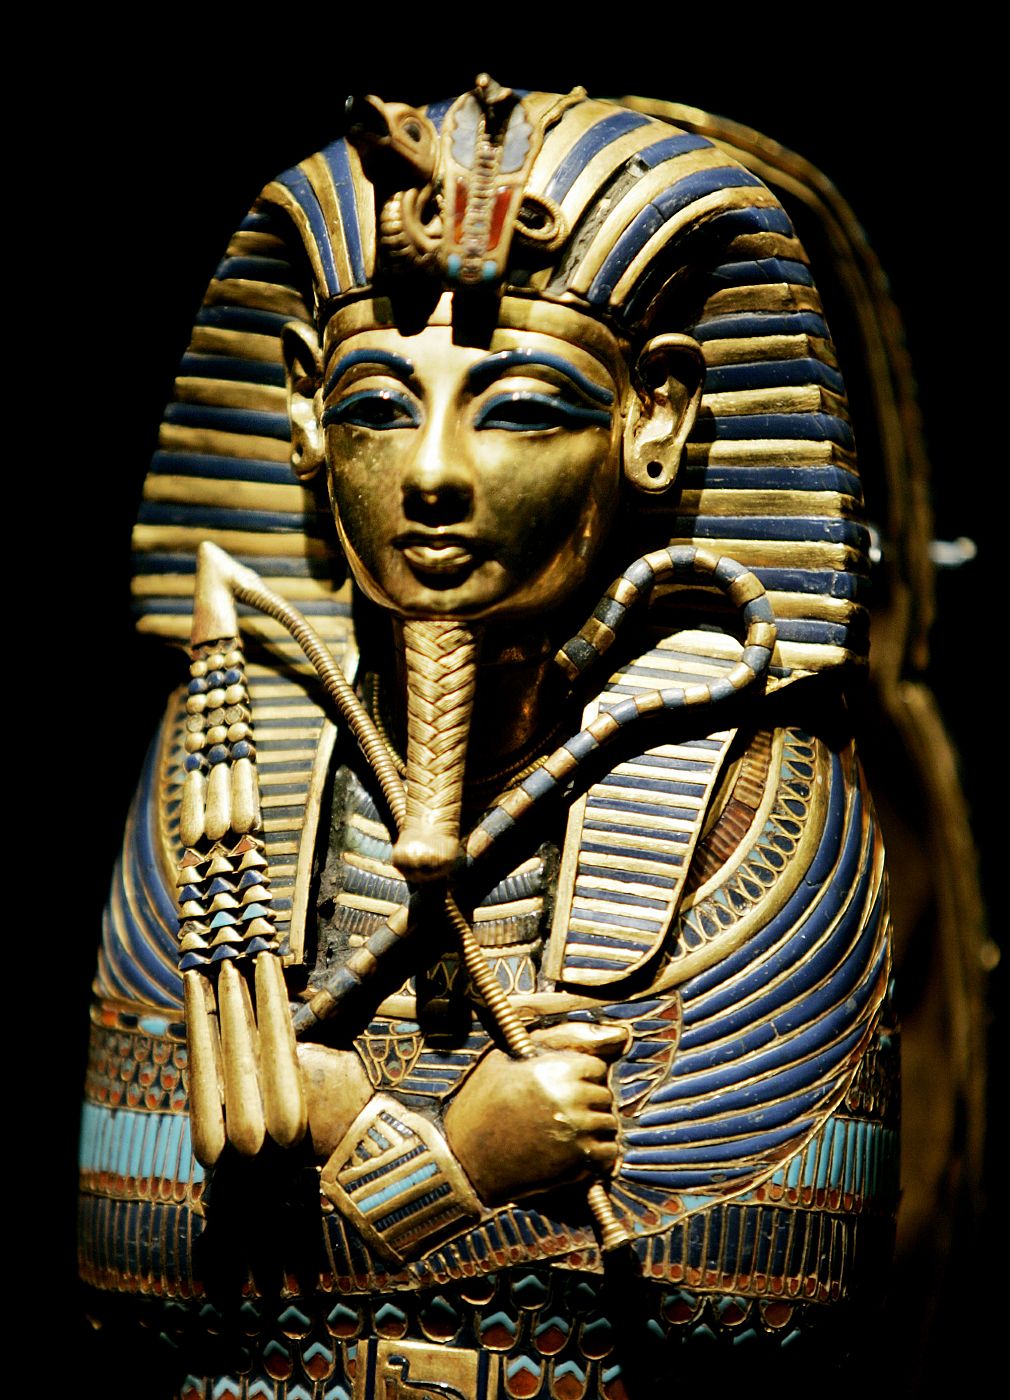 La máscara del rey egipcio se ha convertido en todo un icono en torno a la figura del faraón más conocido.